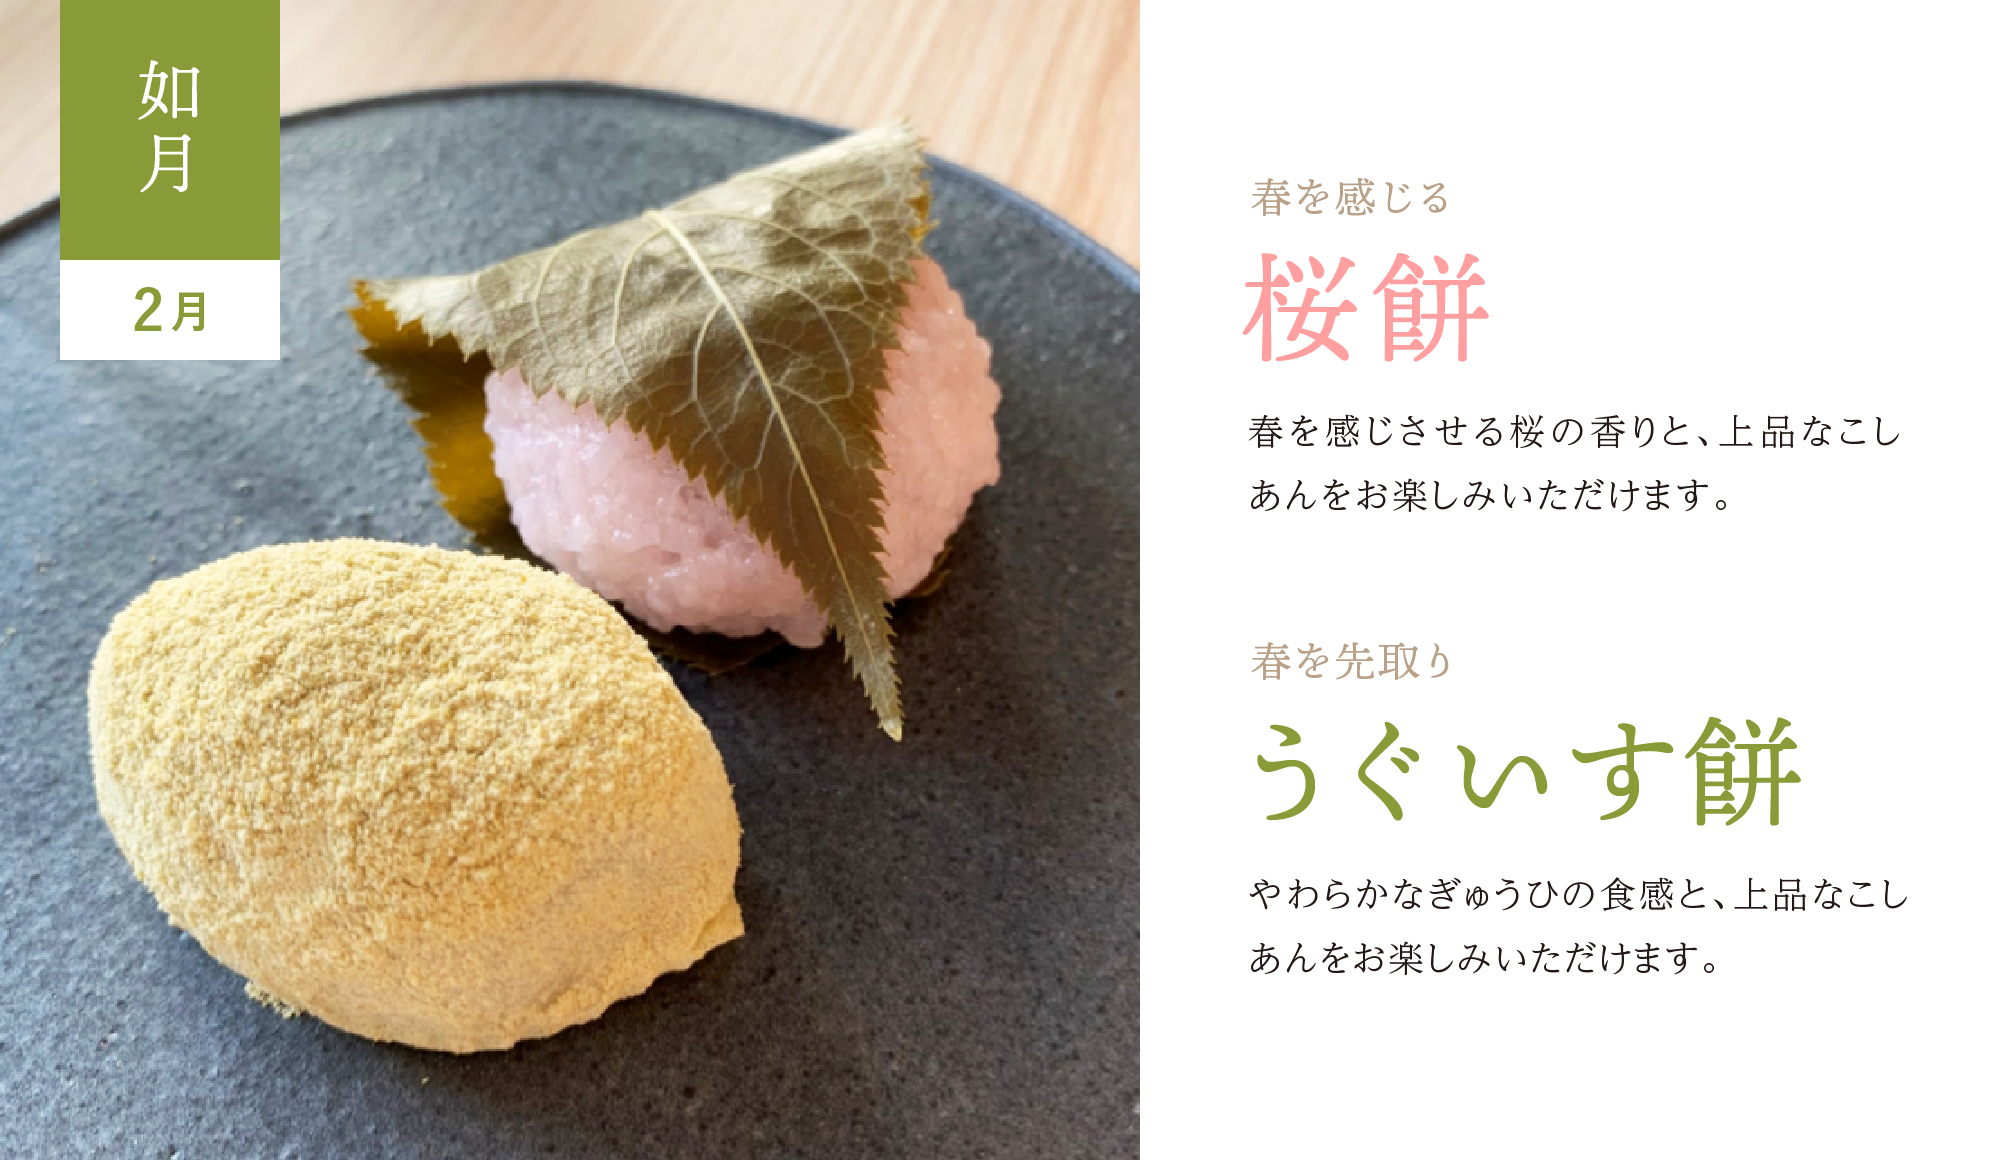 〈和菓子のある暮らし〉2月「桜餅」「うぐいす餅」